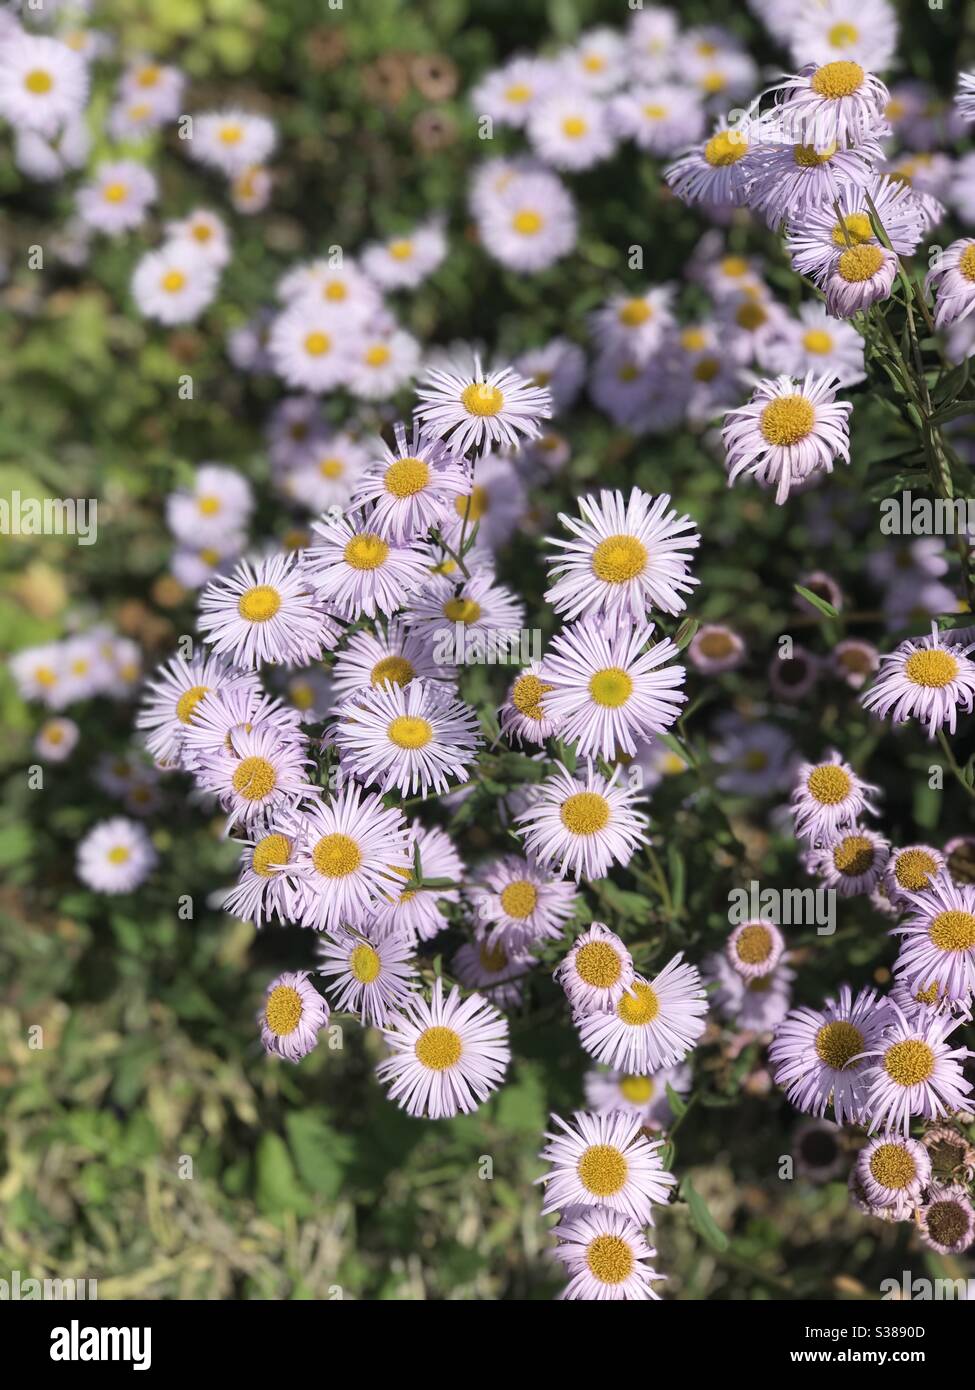 Erigeron glaucus, seaside daisy (fleabane) at Mottisfont Stock Photo